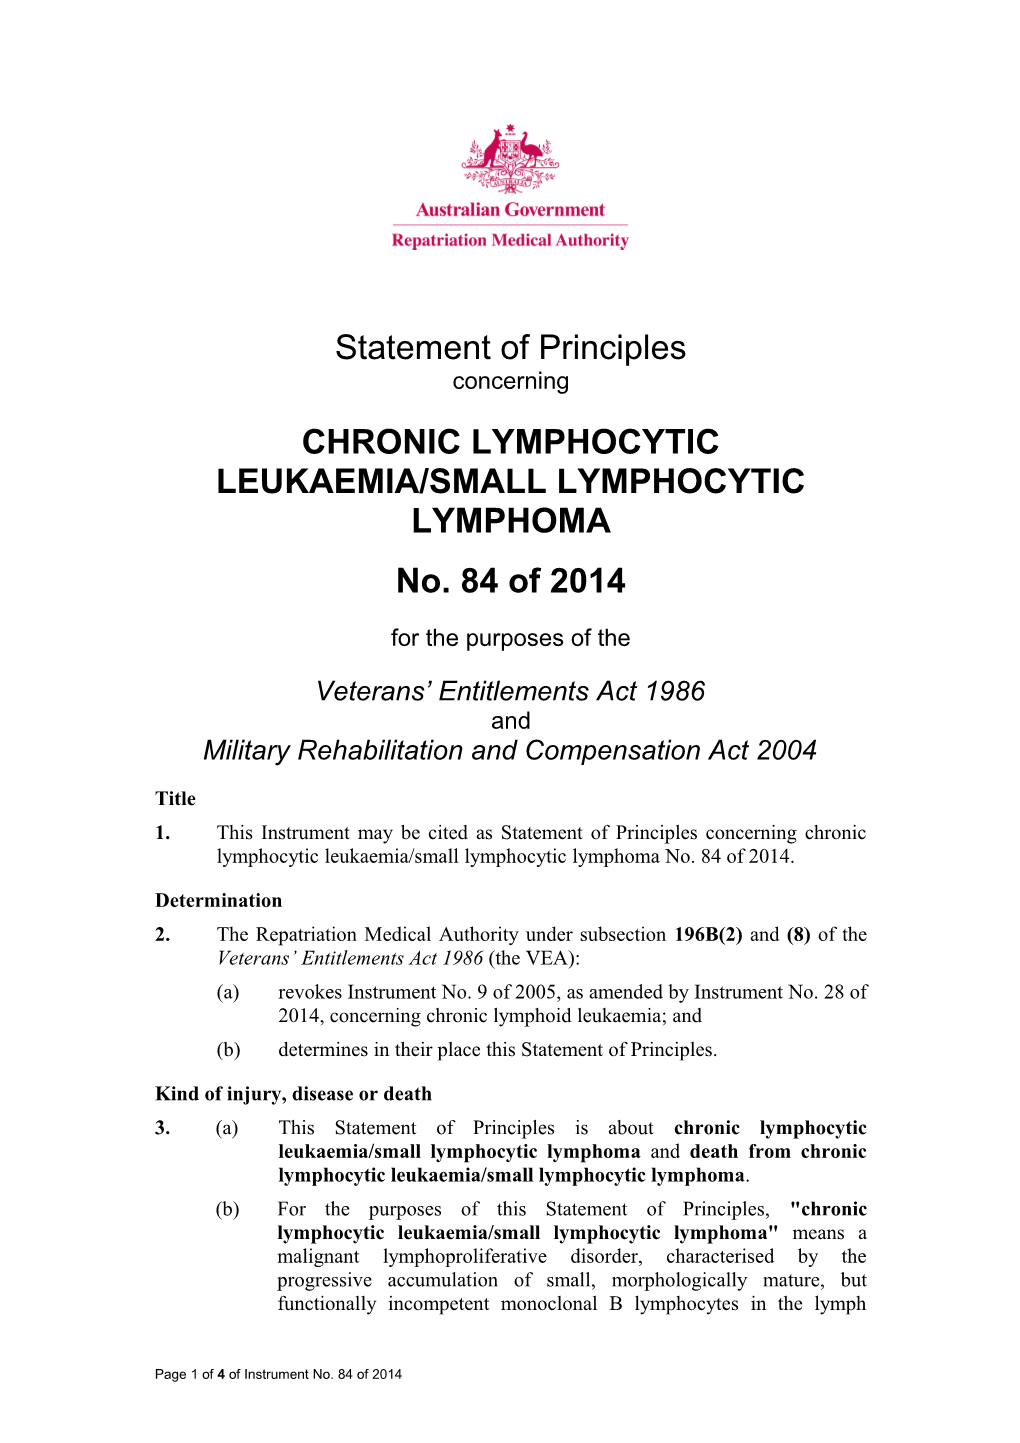 Chronic Lymphocytic Leukaemia/Small Lymphocytic Lymphoma